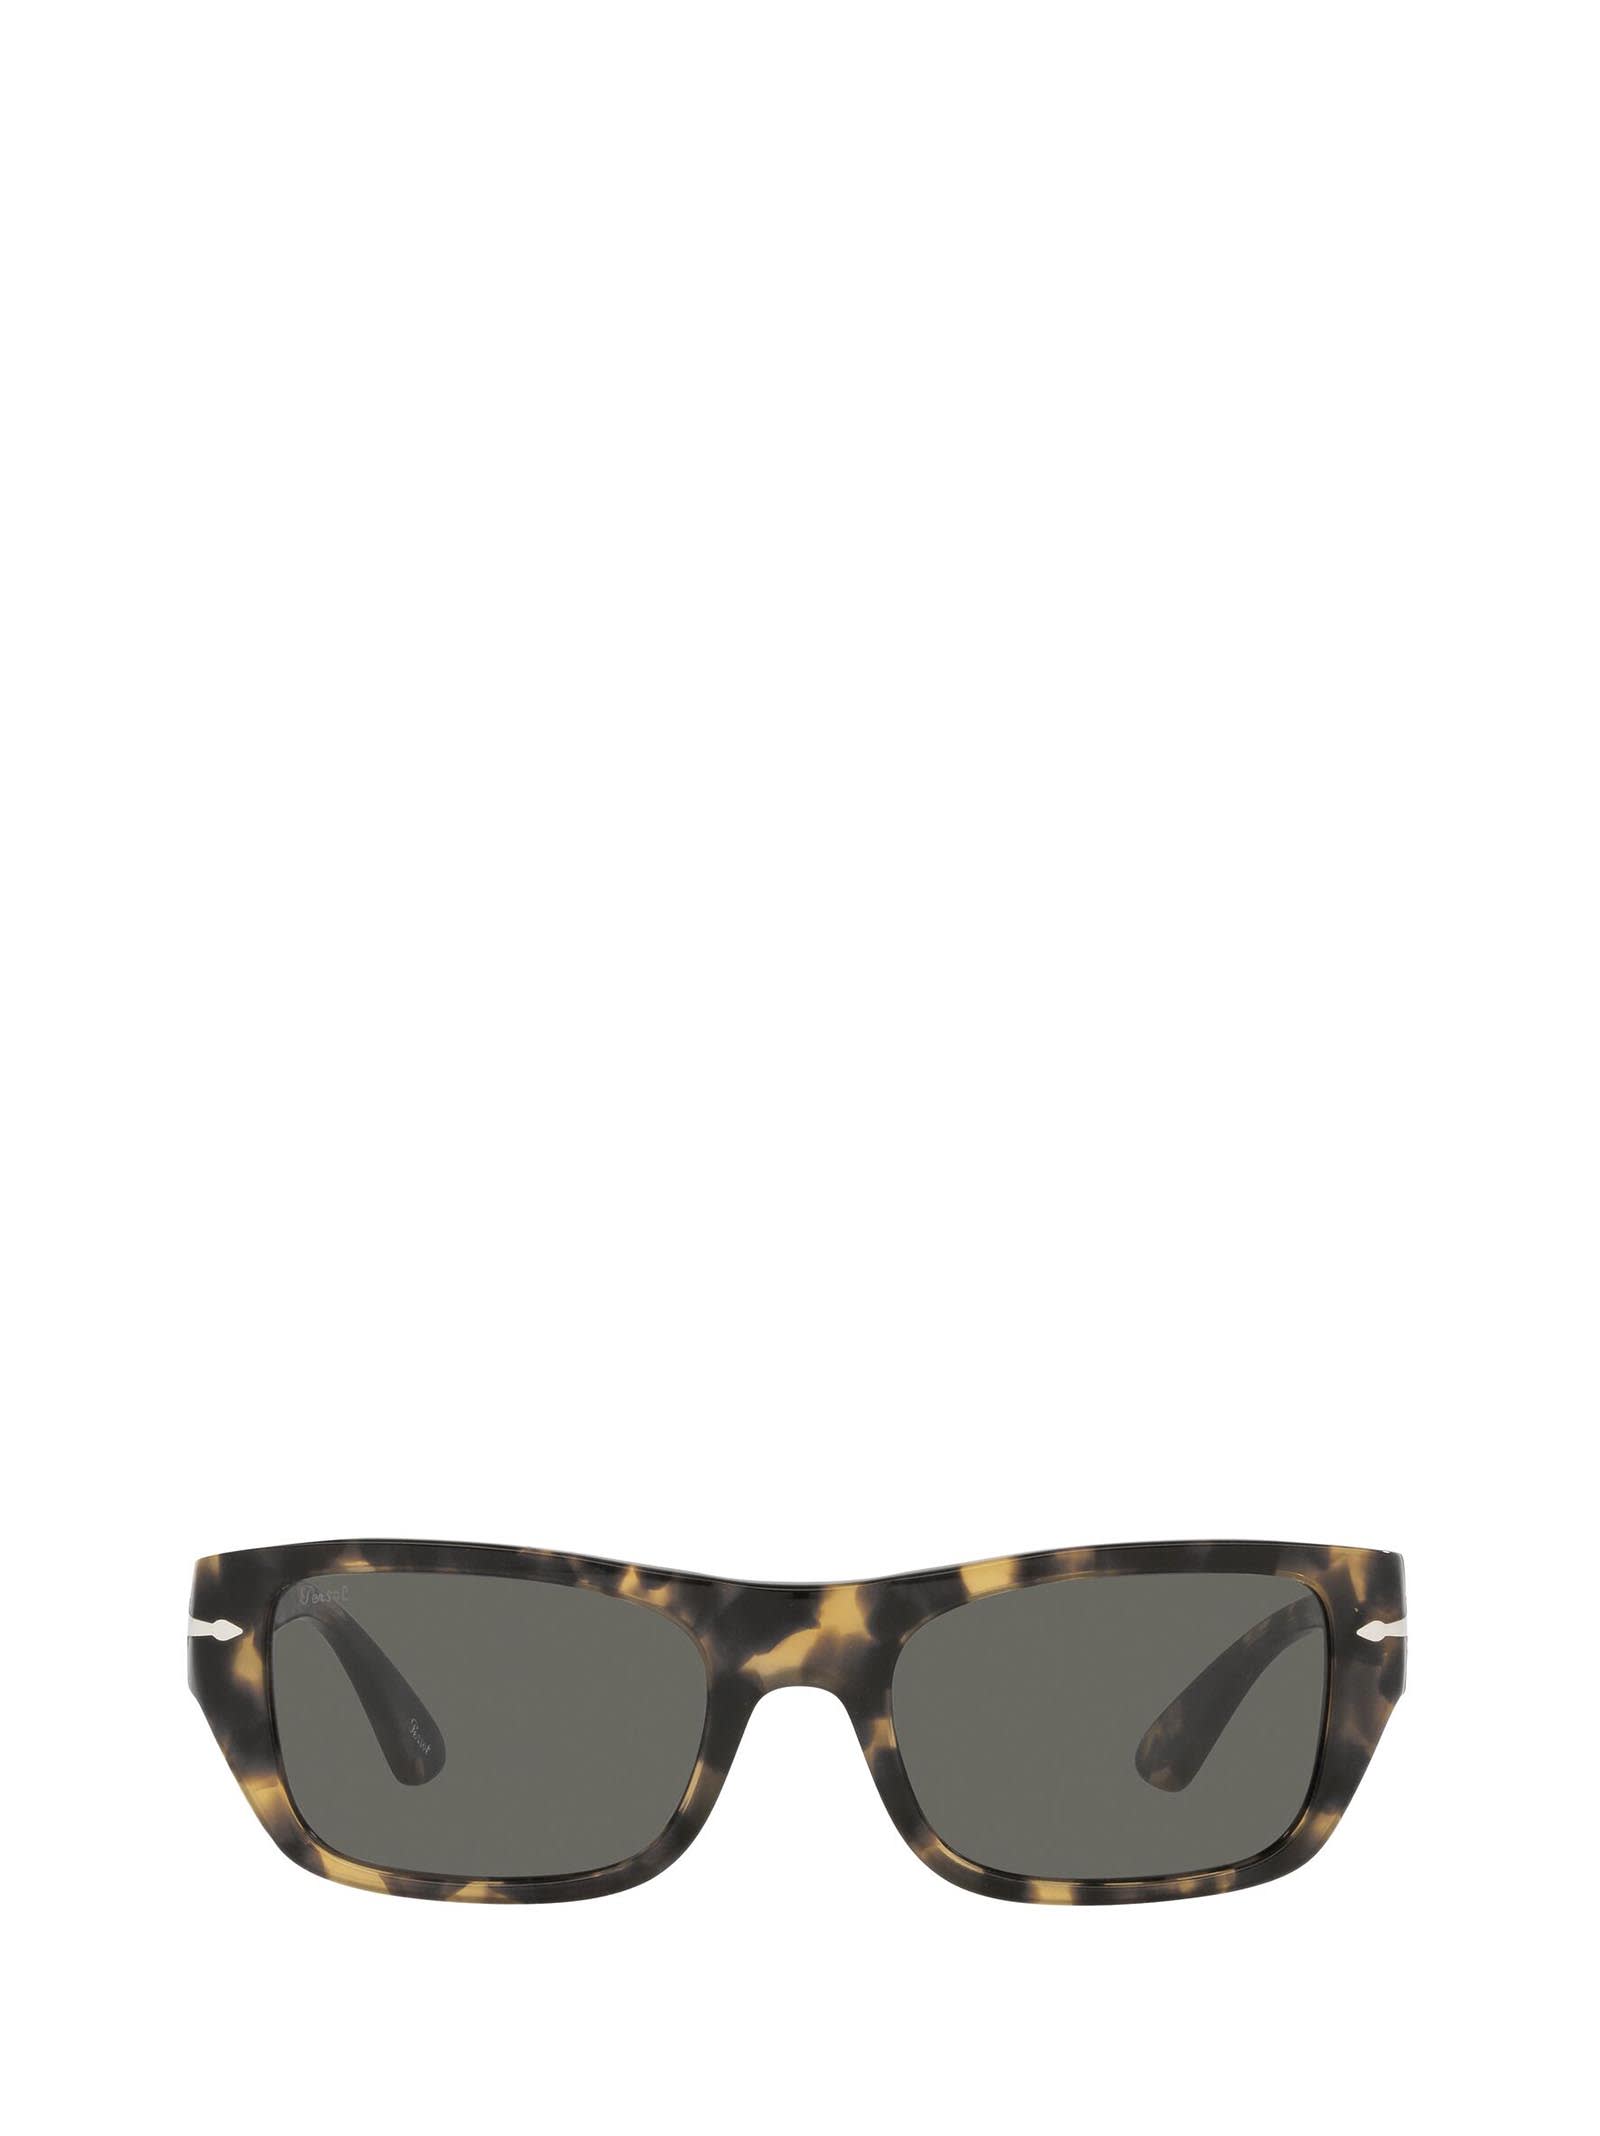 Persol Persol Po3268s Brown / Tortoise Beige Sunglasses